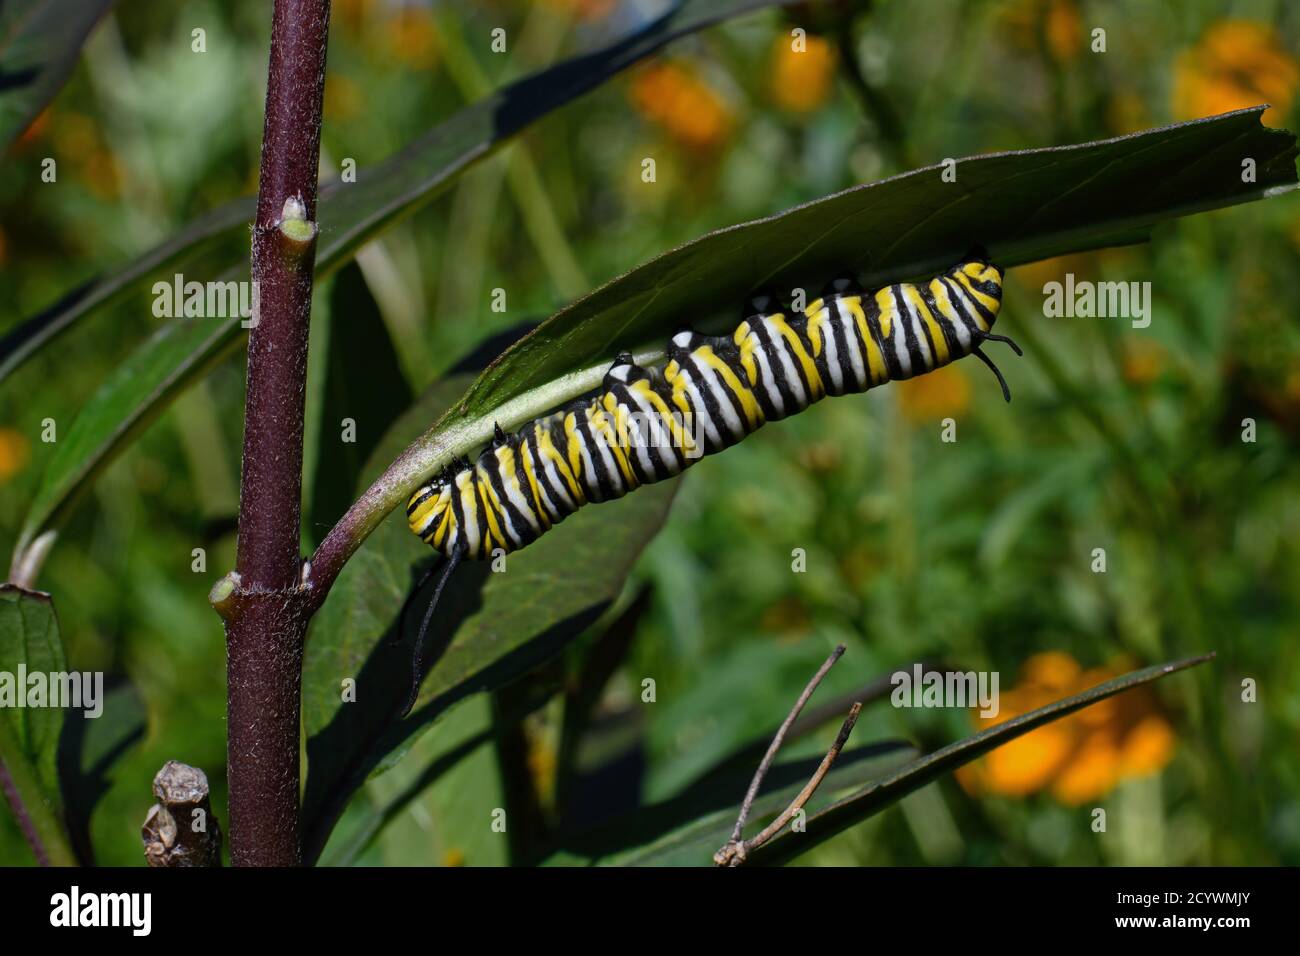 Monarch Schmetterling Raupe auf Milchkrautblatt. Es ist ein Milchkrautfalter aus der Familie Nymphalidae und ist in den USA vom Lebensraumverlust bedroht. Stockfoto